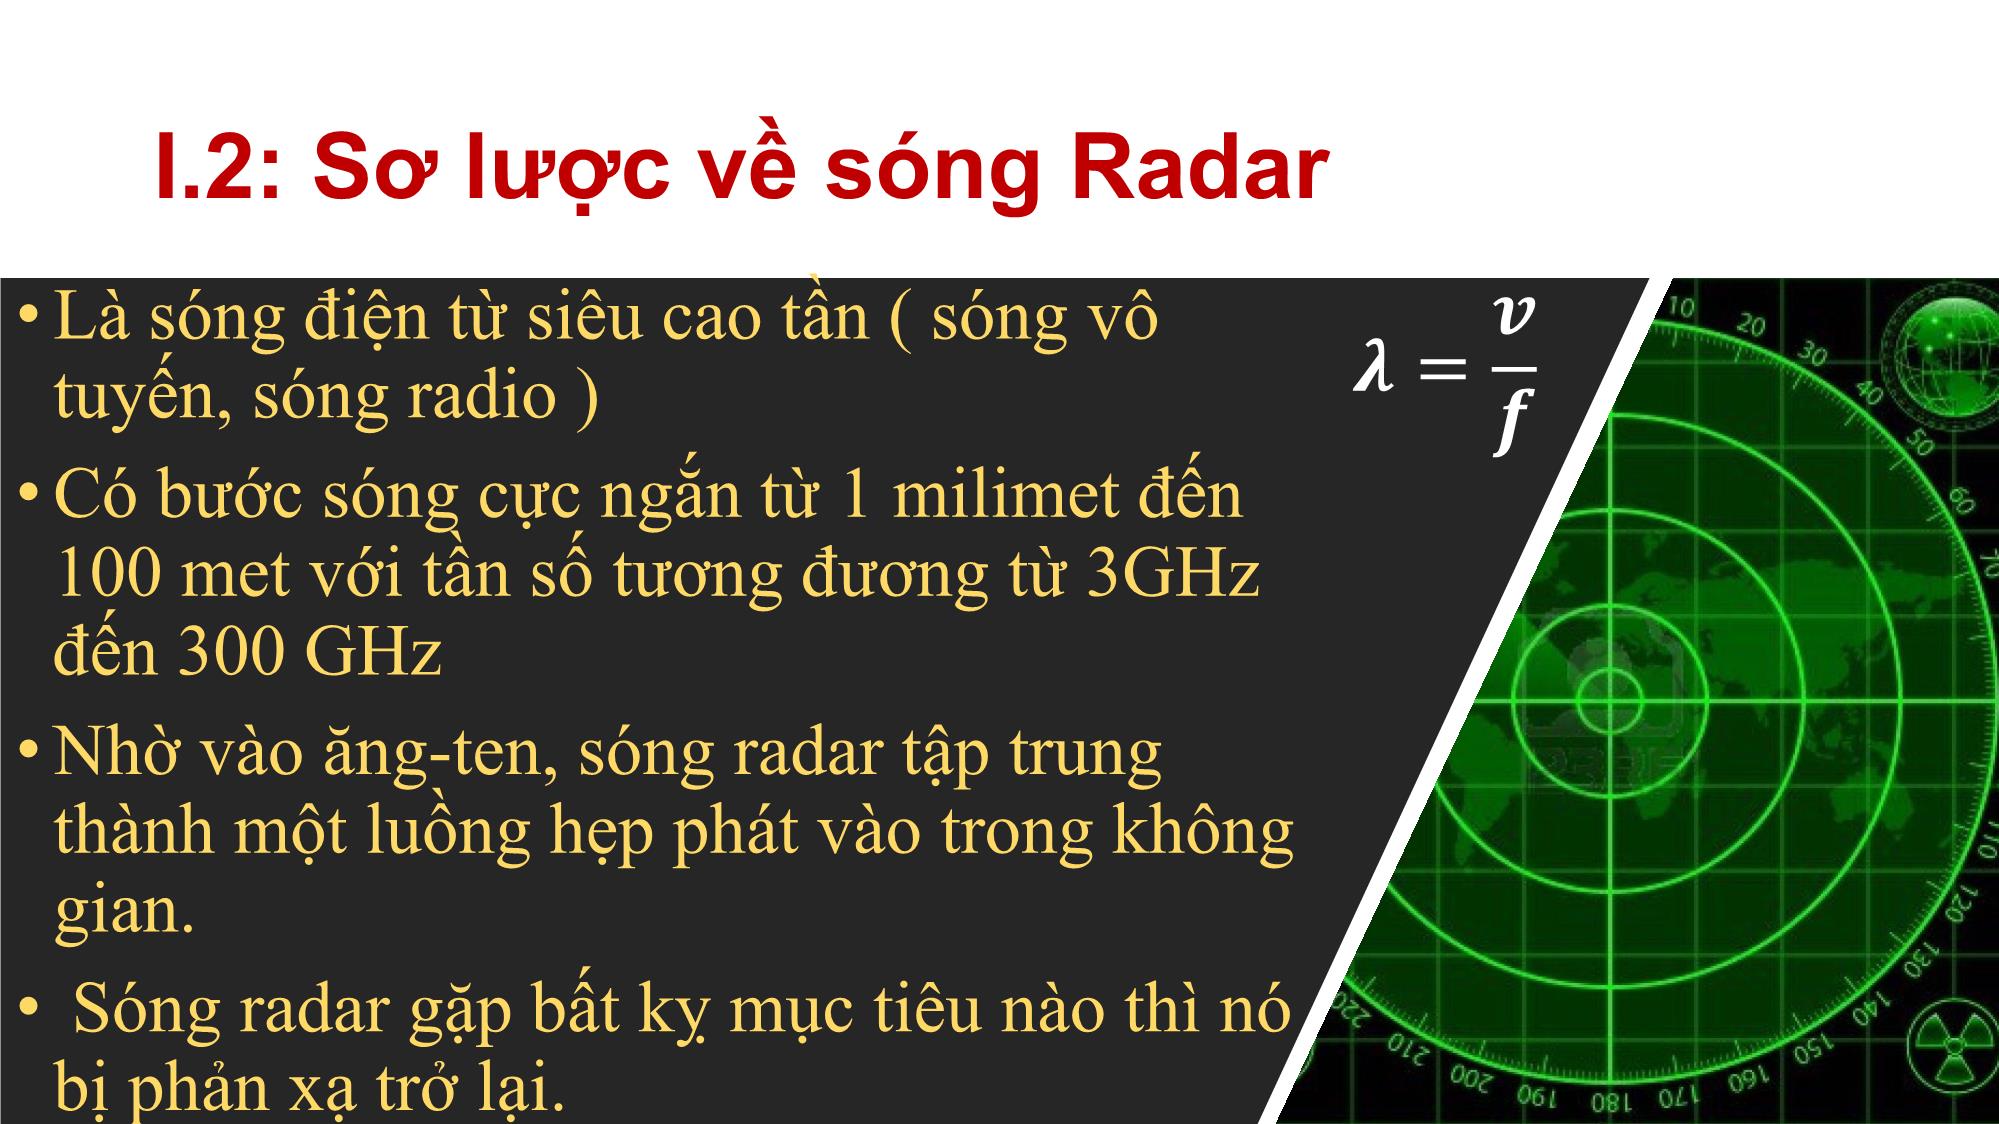 Báo cáo Sóng radar và ứng dụng trang 7